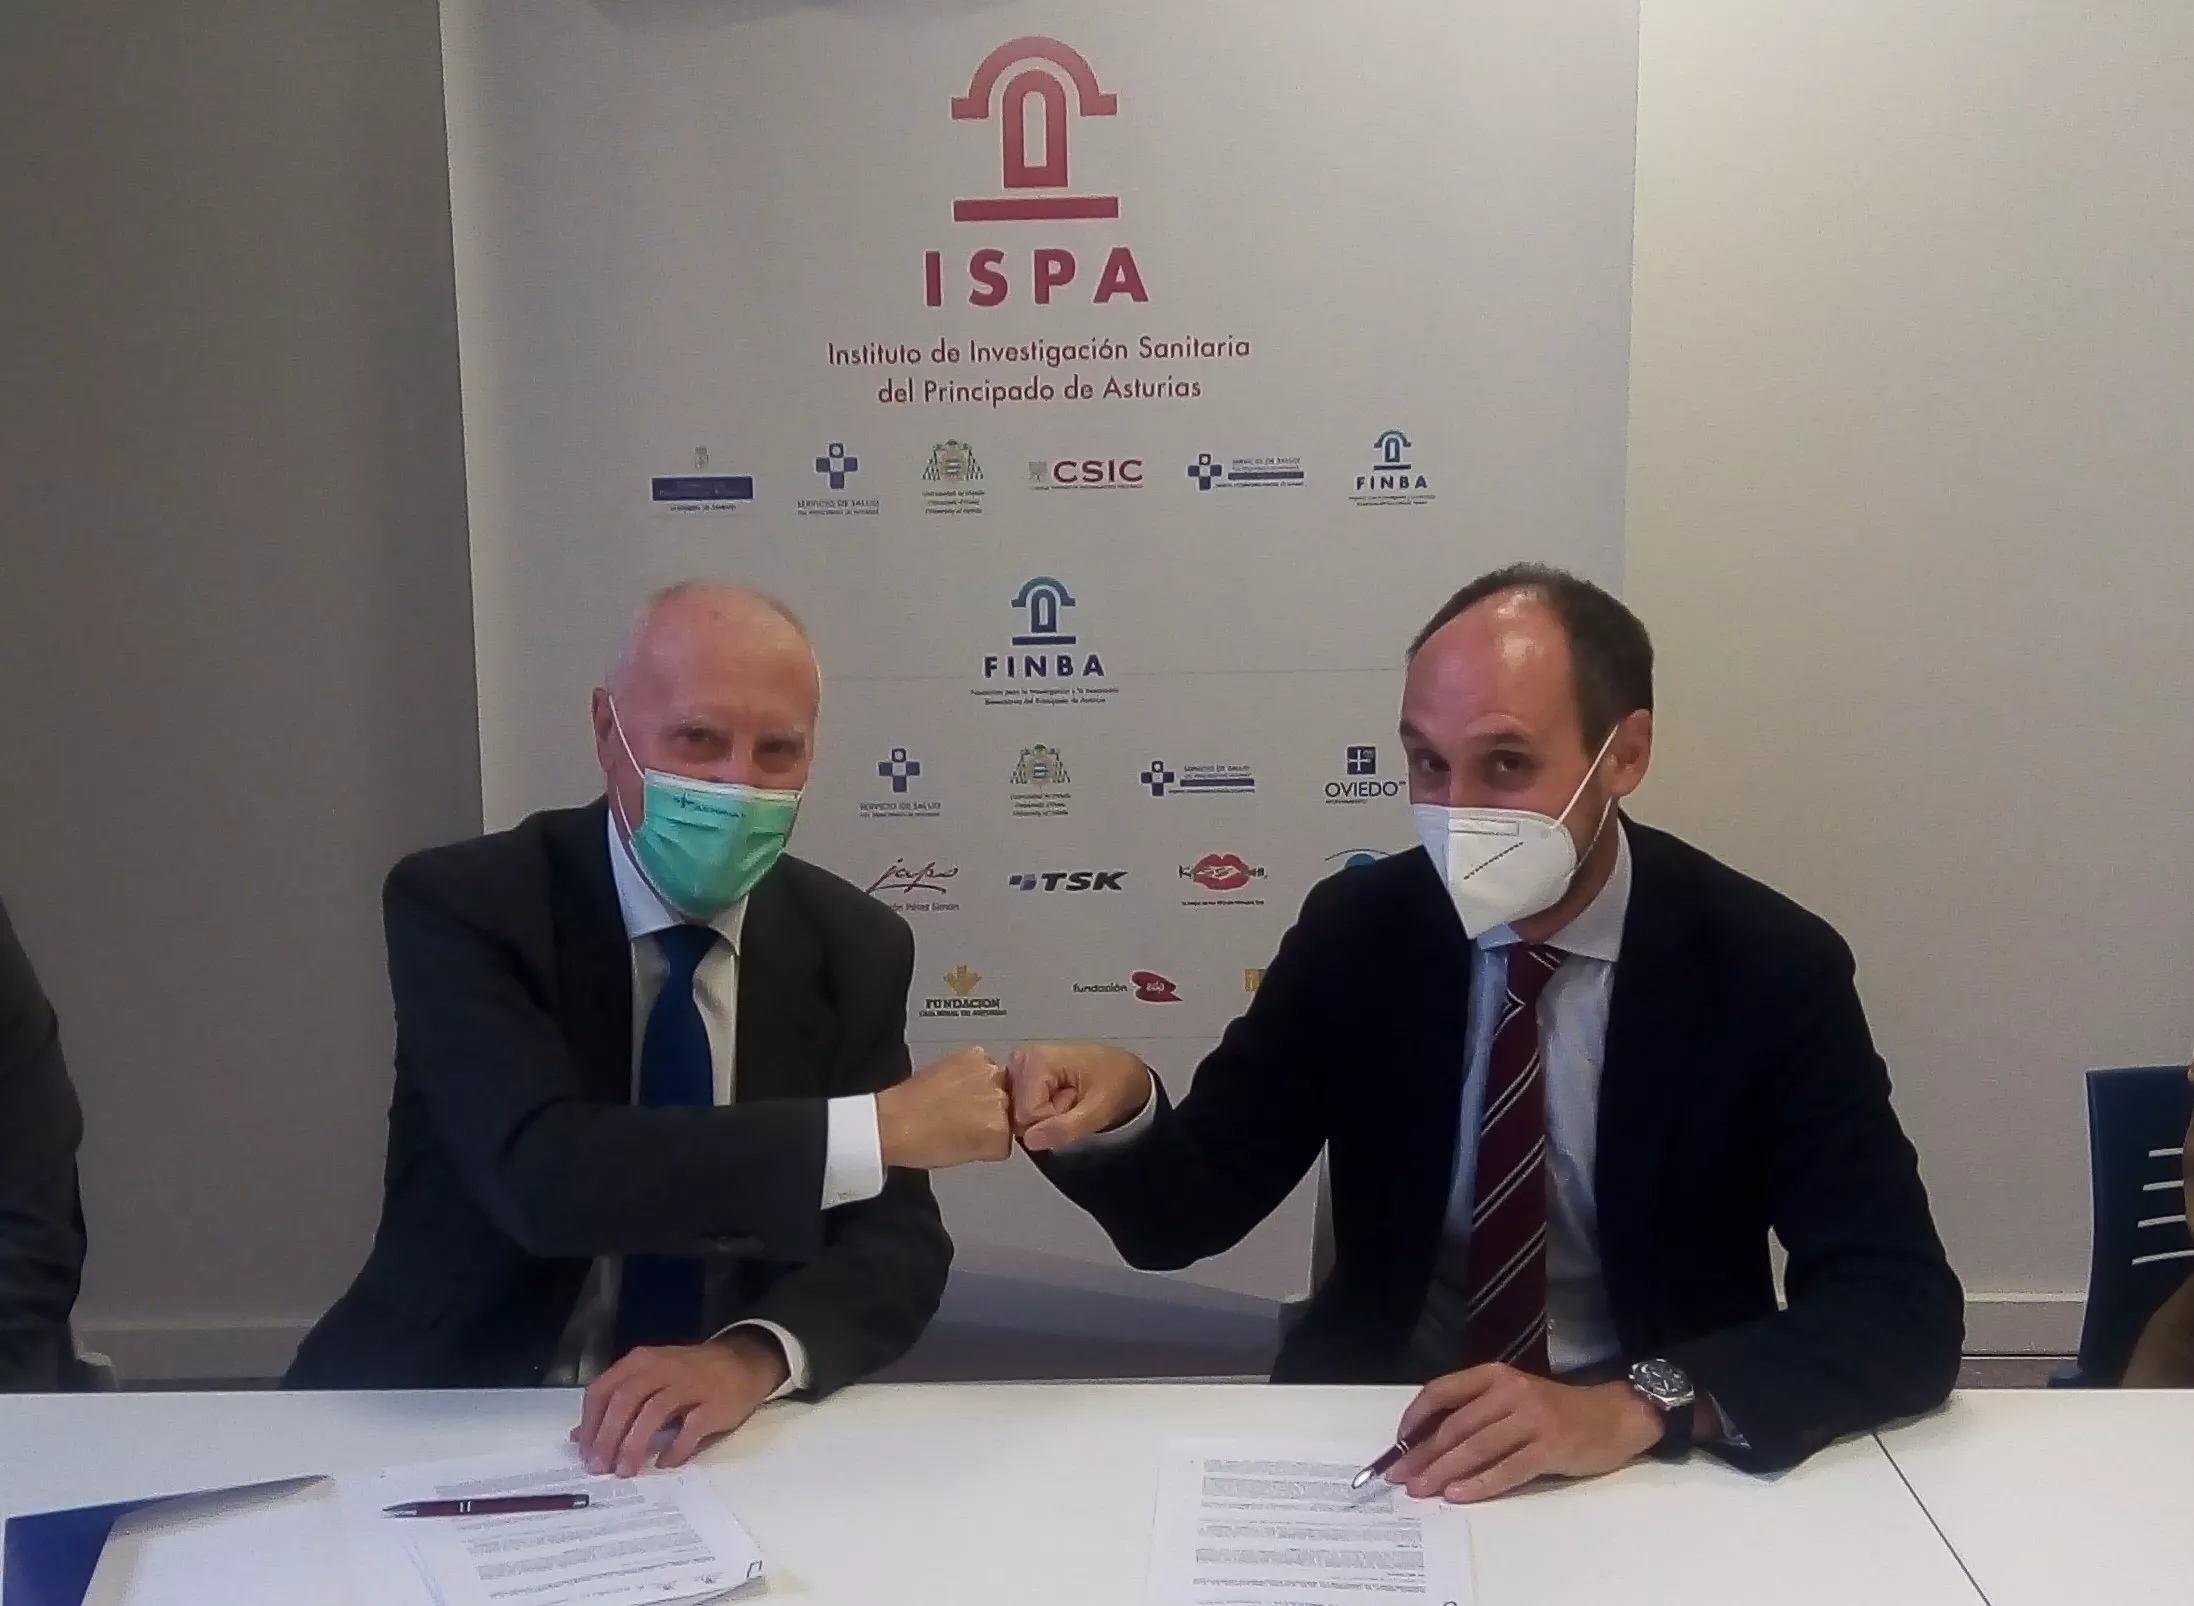 FINBA y Novartis alcanzan un Acuerdo de colaboración para promover la innovación sanitaria en Asturias